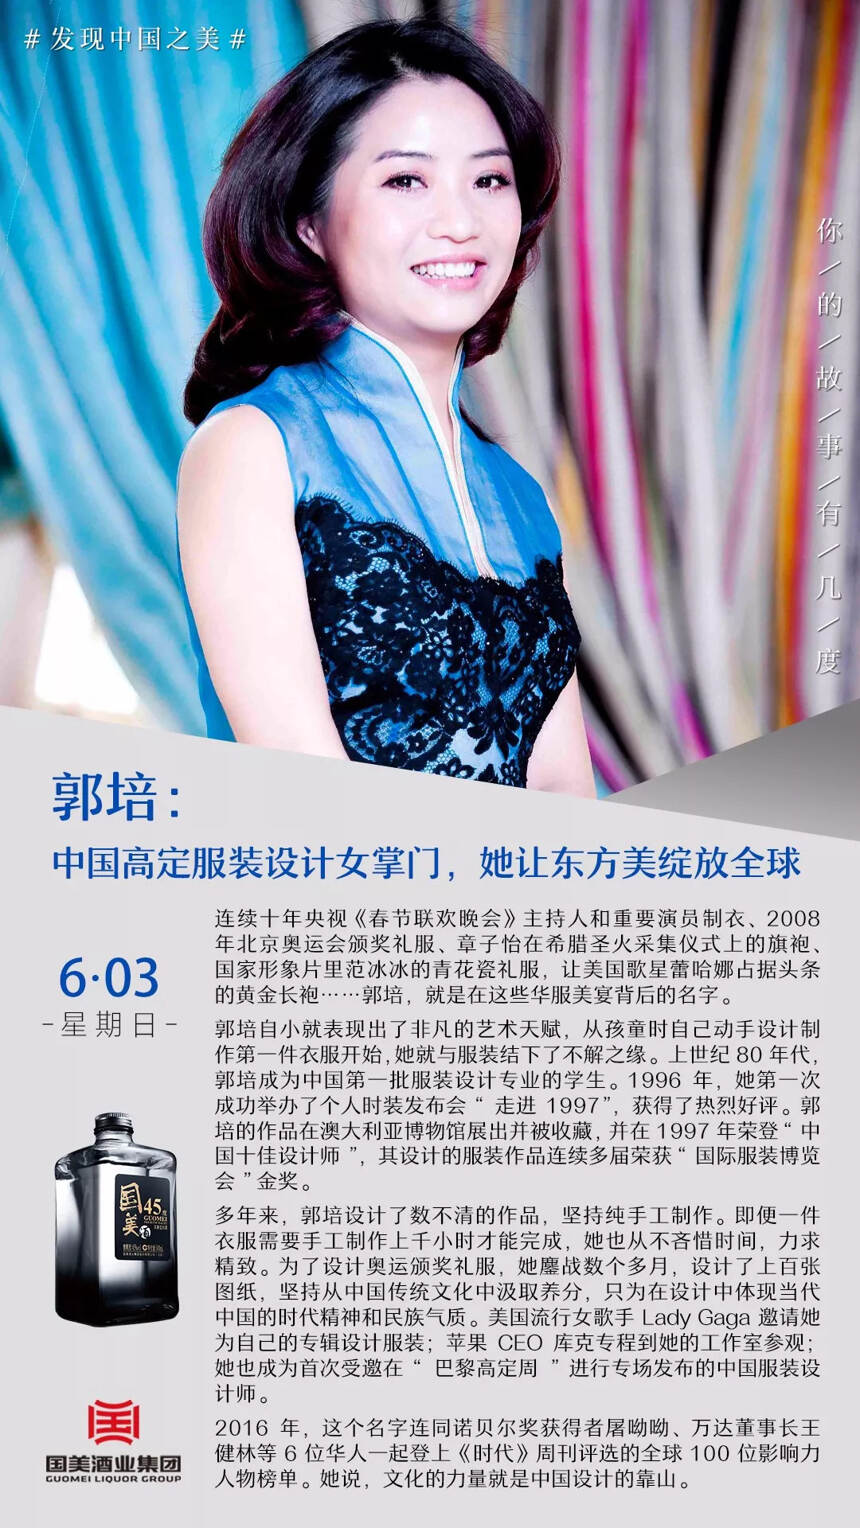 郭培：中国高定服装设计女掌门，她让东方美绽放全球